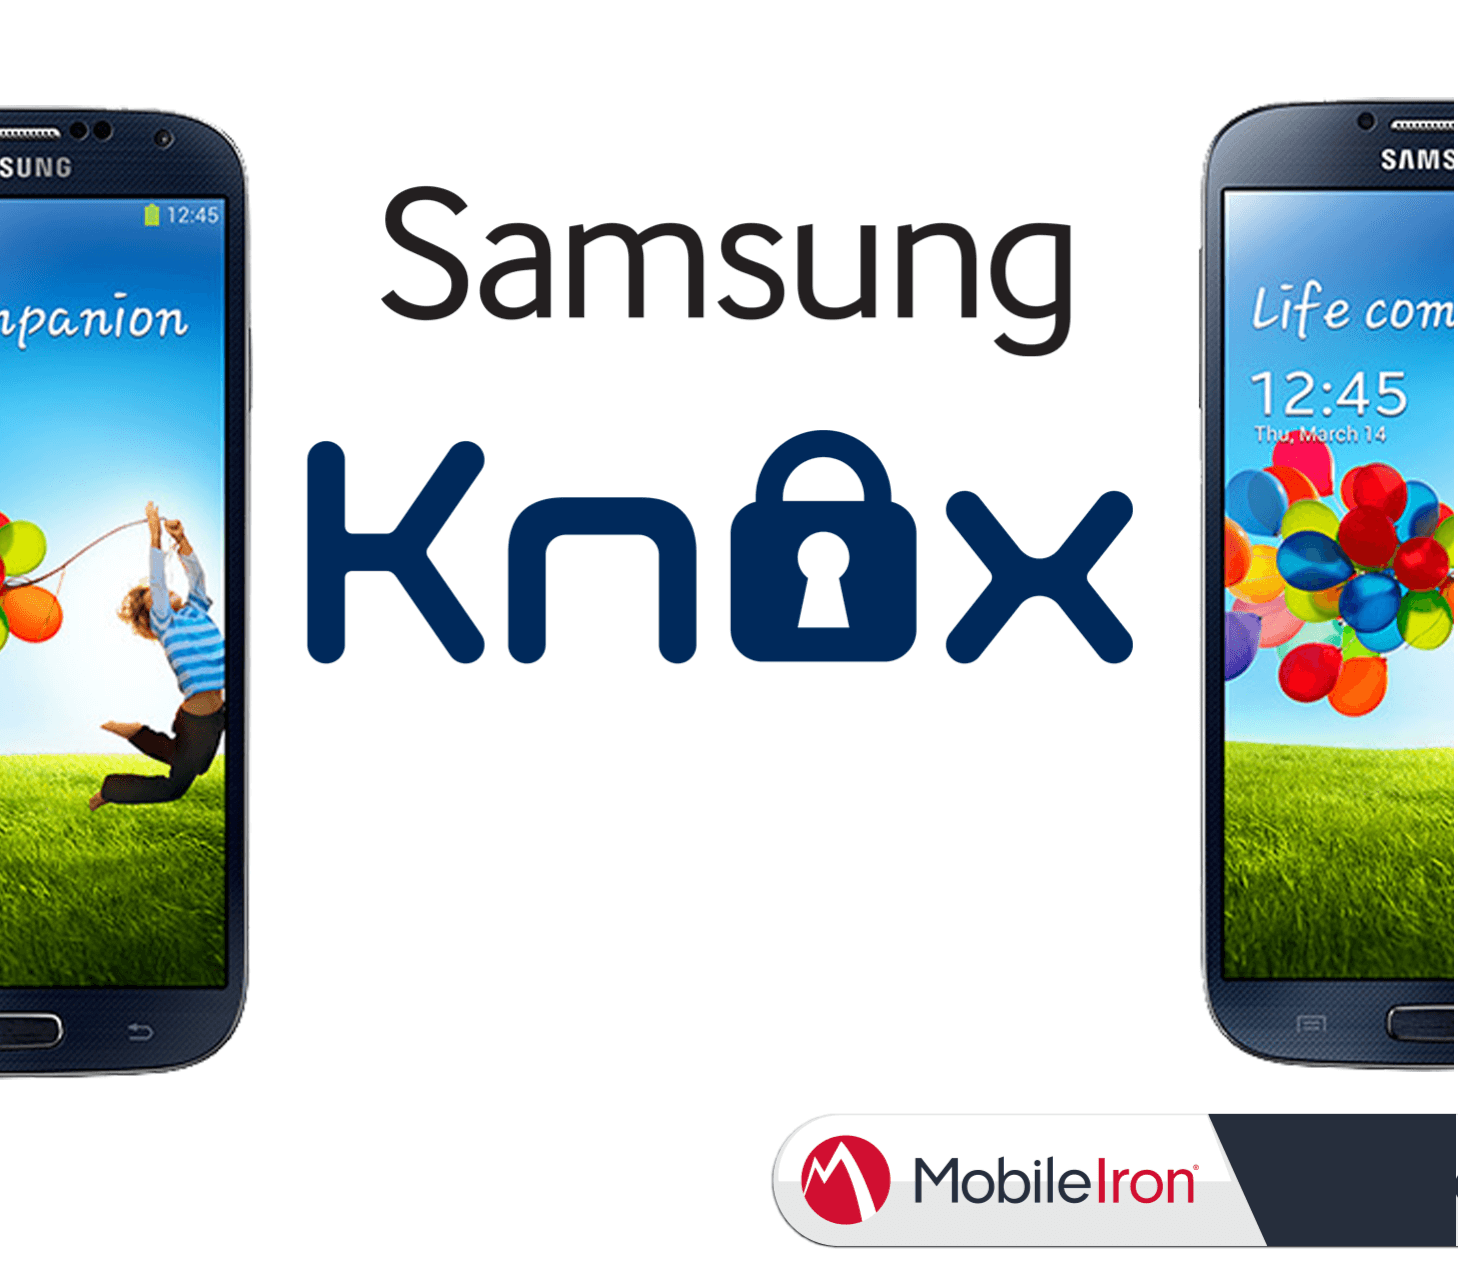 Samsung KNOX, zusammen mit MobileIron